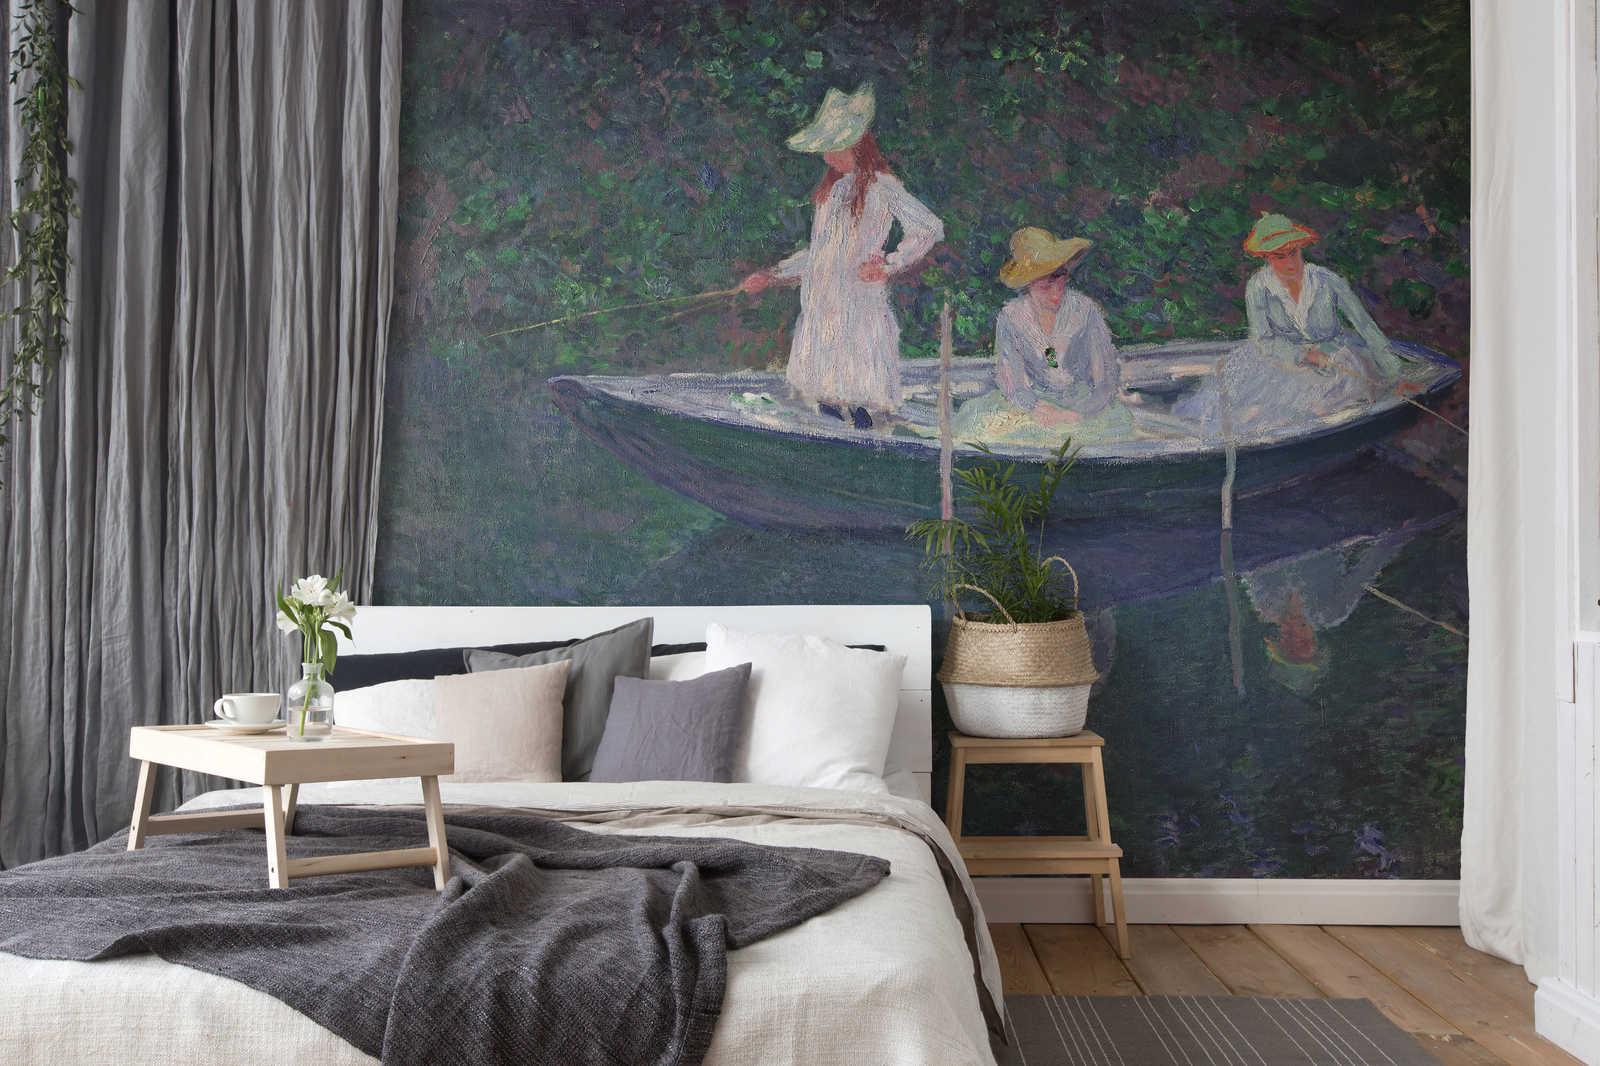             Mural "La barca de Giverny" de Claude Monet
        